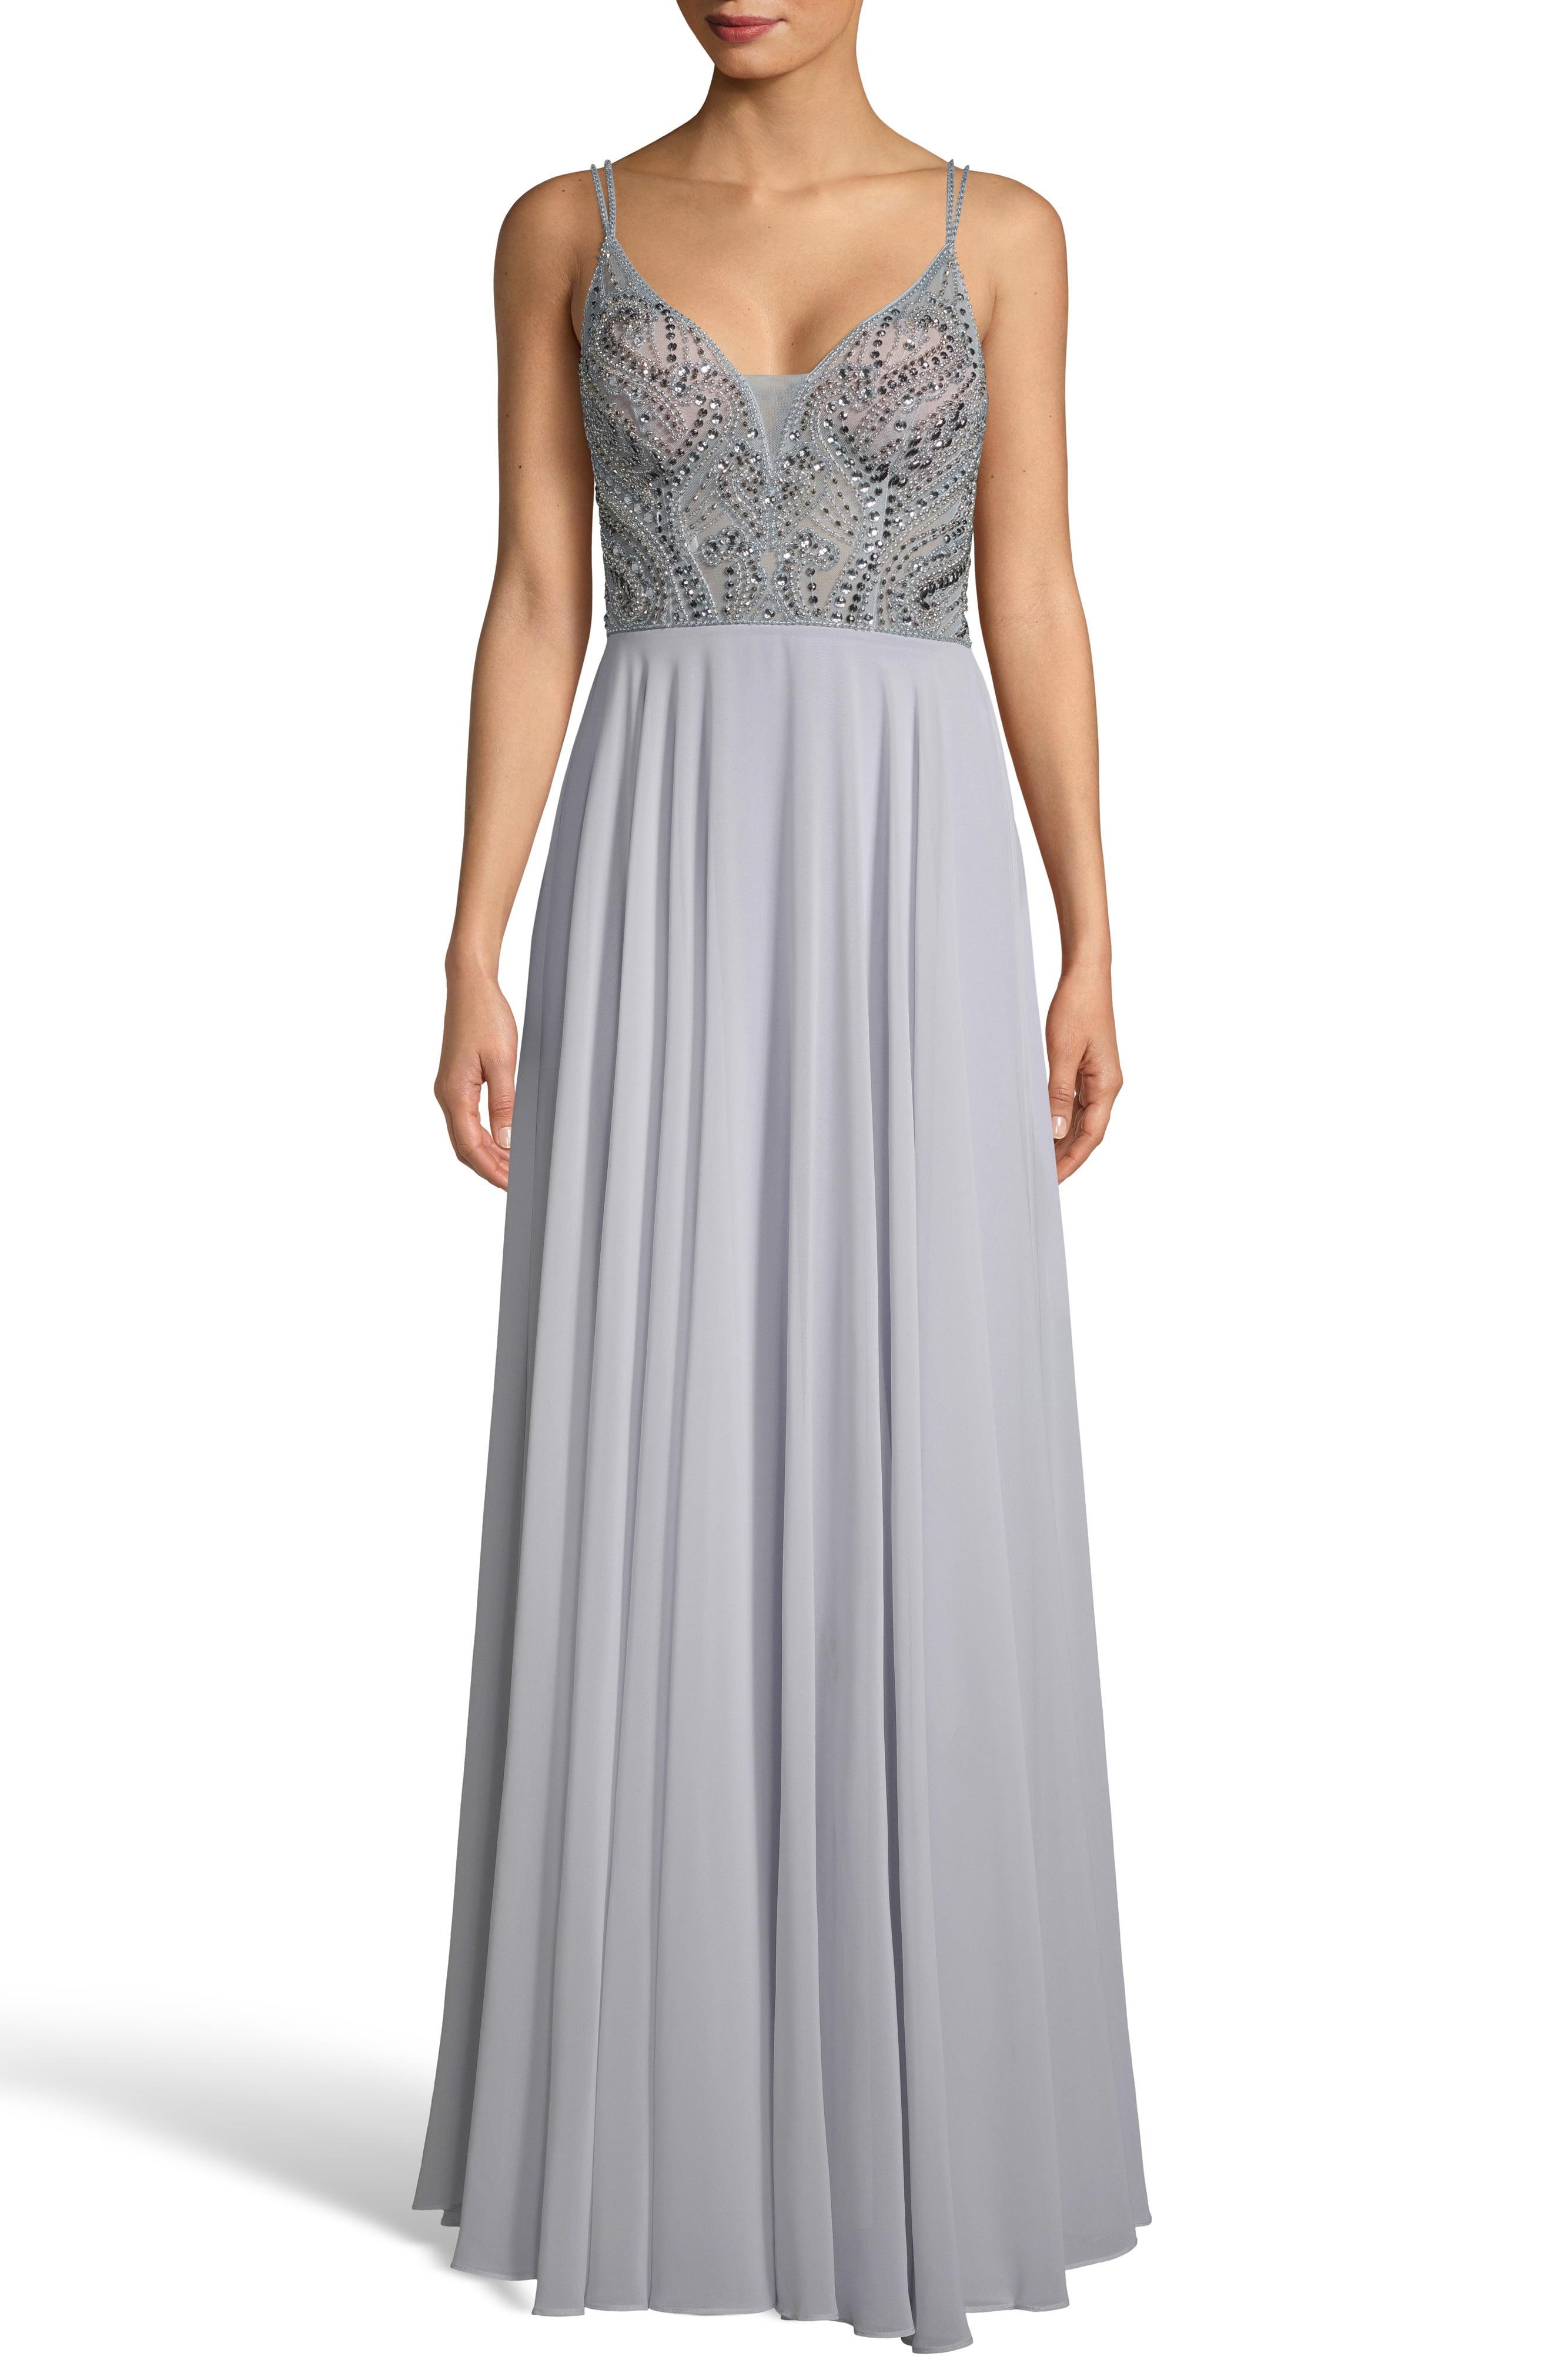 Lyst - Xscape Embellished Illusion Bodice V-neck Chiffon Evening Dress ...